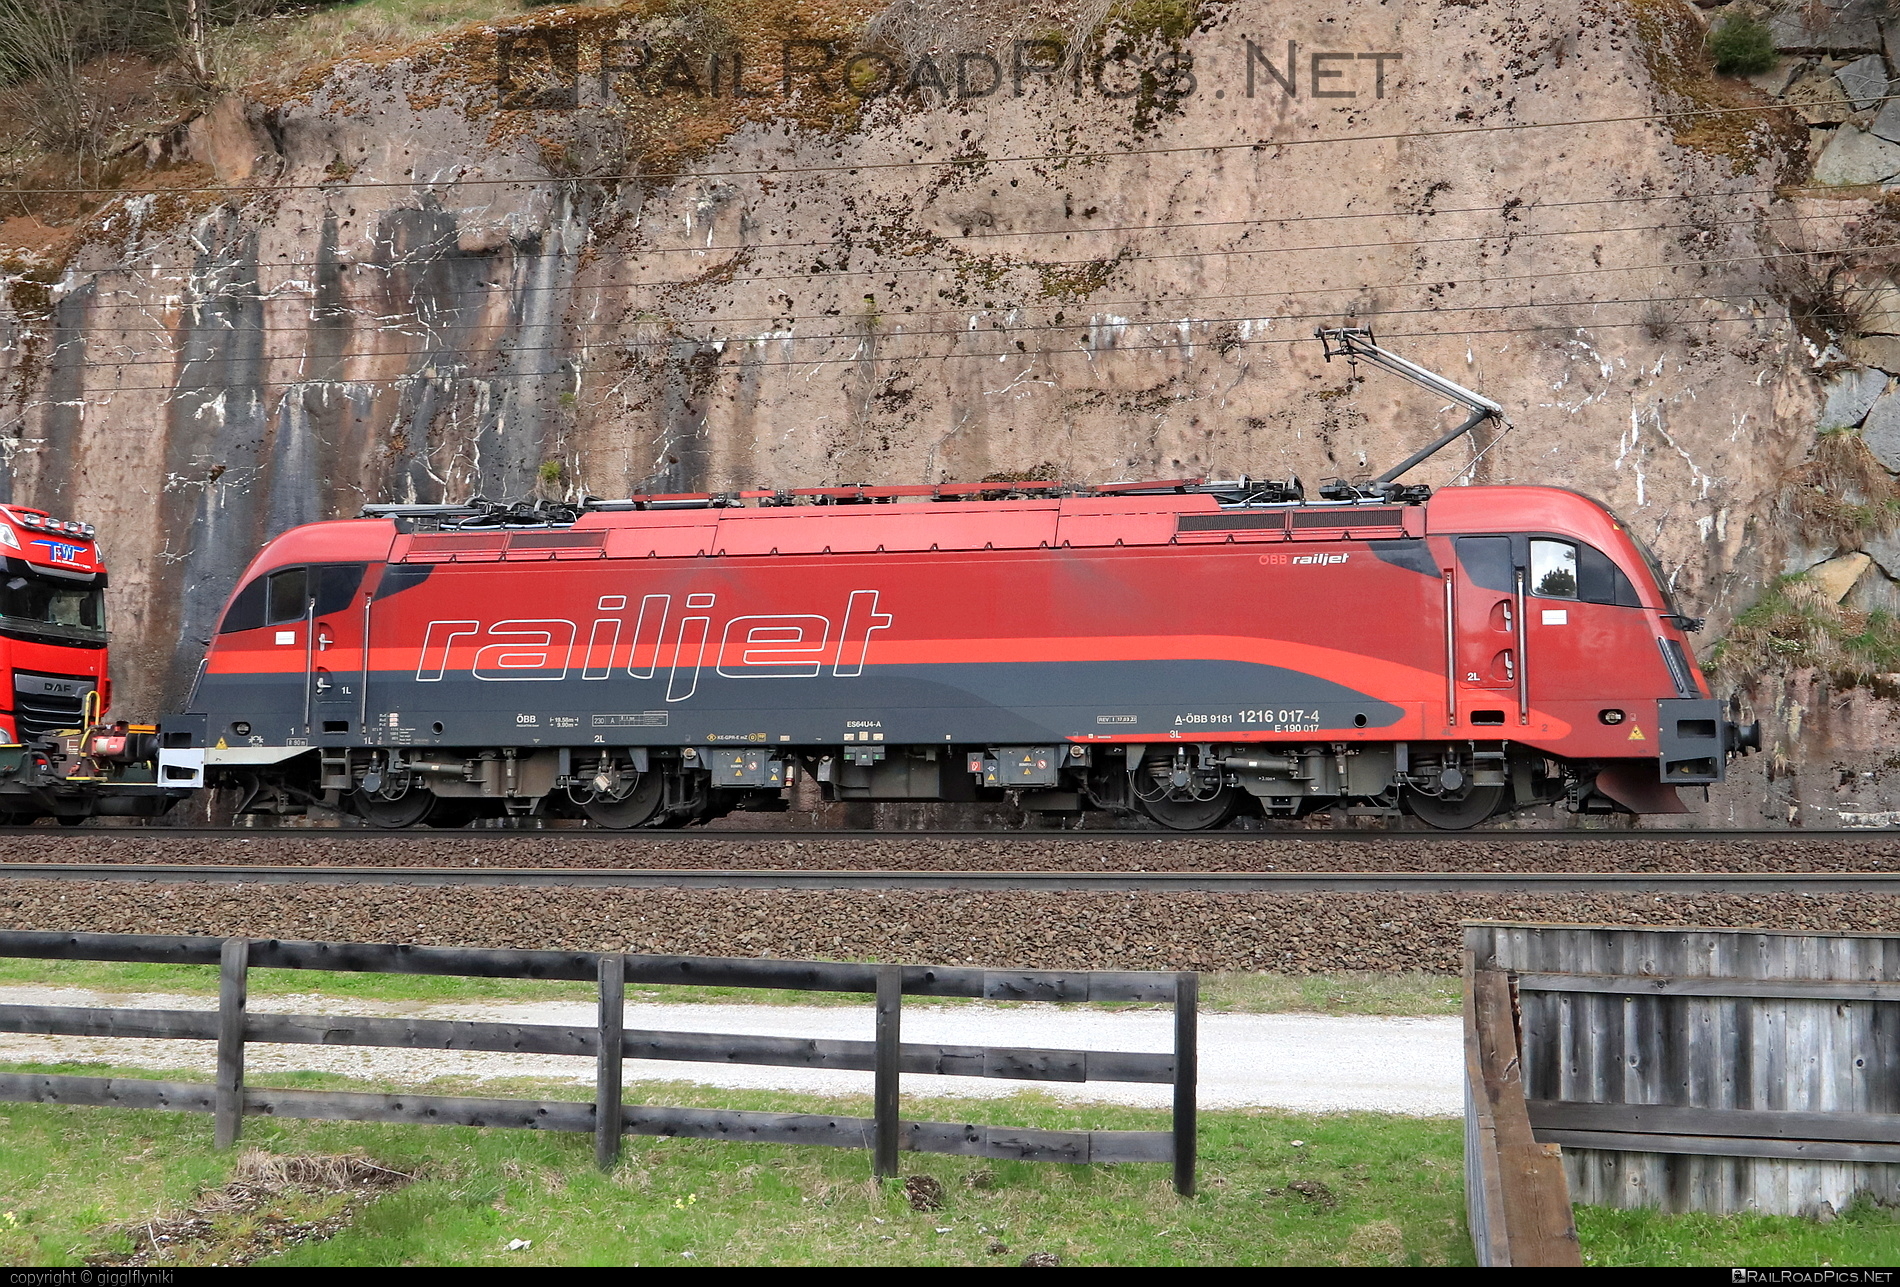 Siemens ES 64 U4 - 1216 017 operated by Rail Cargo Austria AG #es64 #es64u4 #eurosprinter #obb #osterreichischebundesbahnen #railjet #rcw #siemens #siemensEs64 #siemensEs64u4 #siemenstaurus #taurus #tauruslocomotive